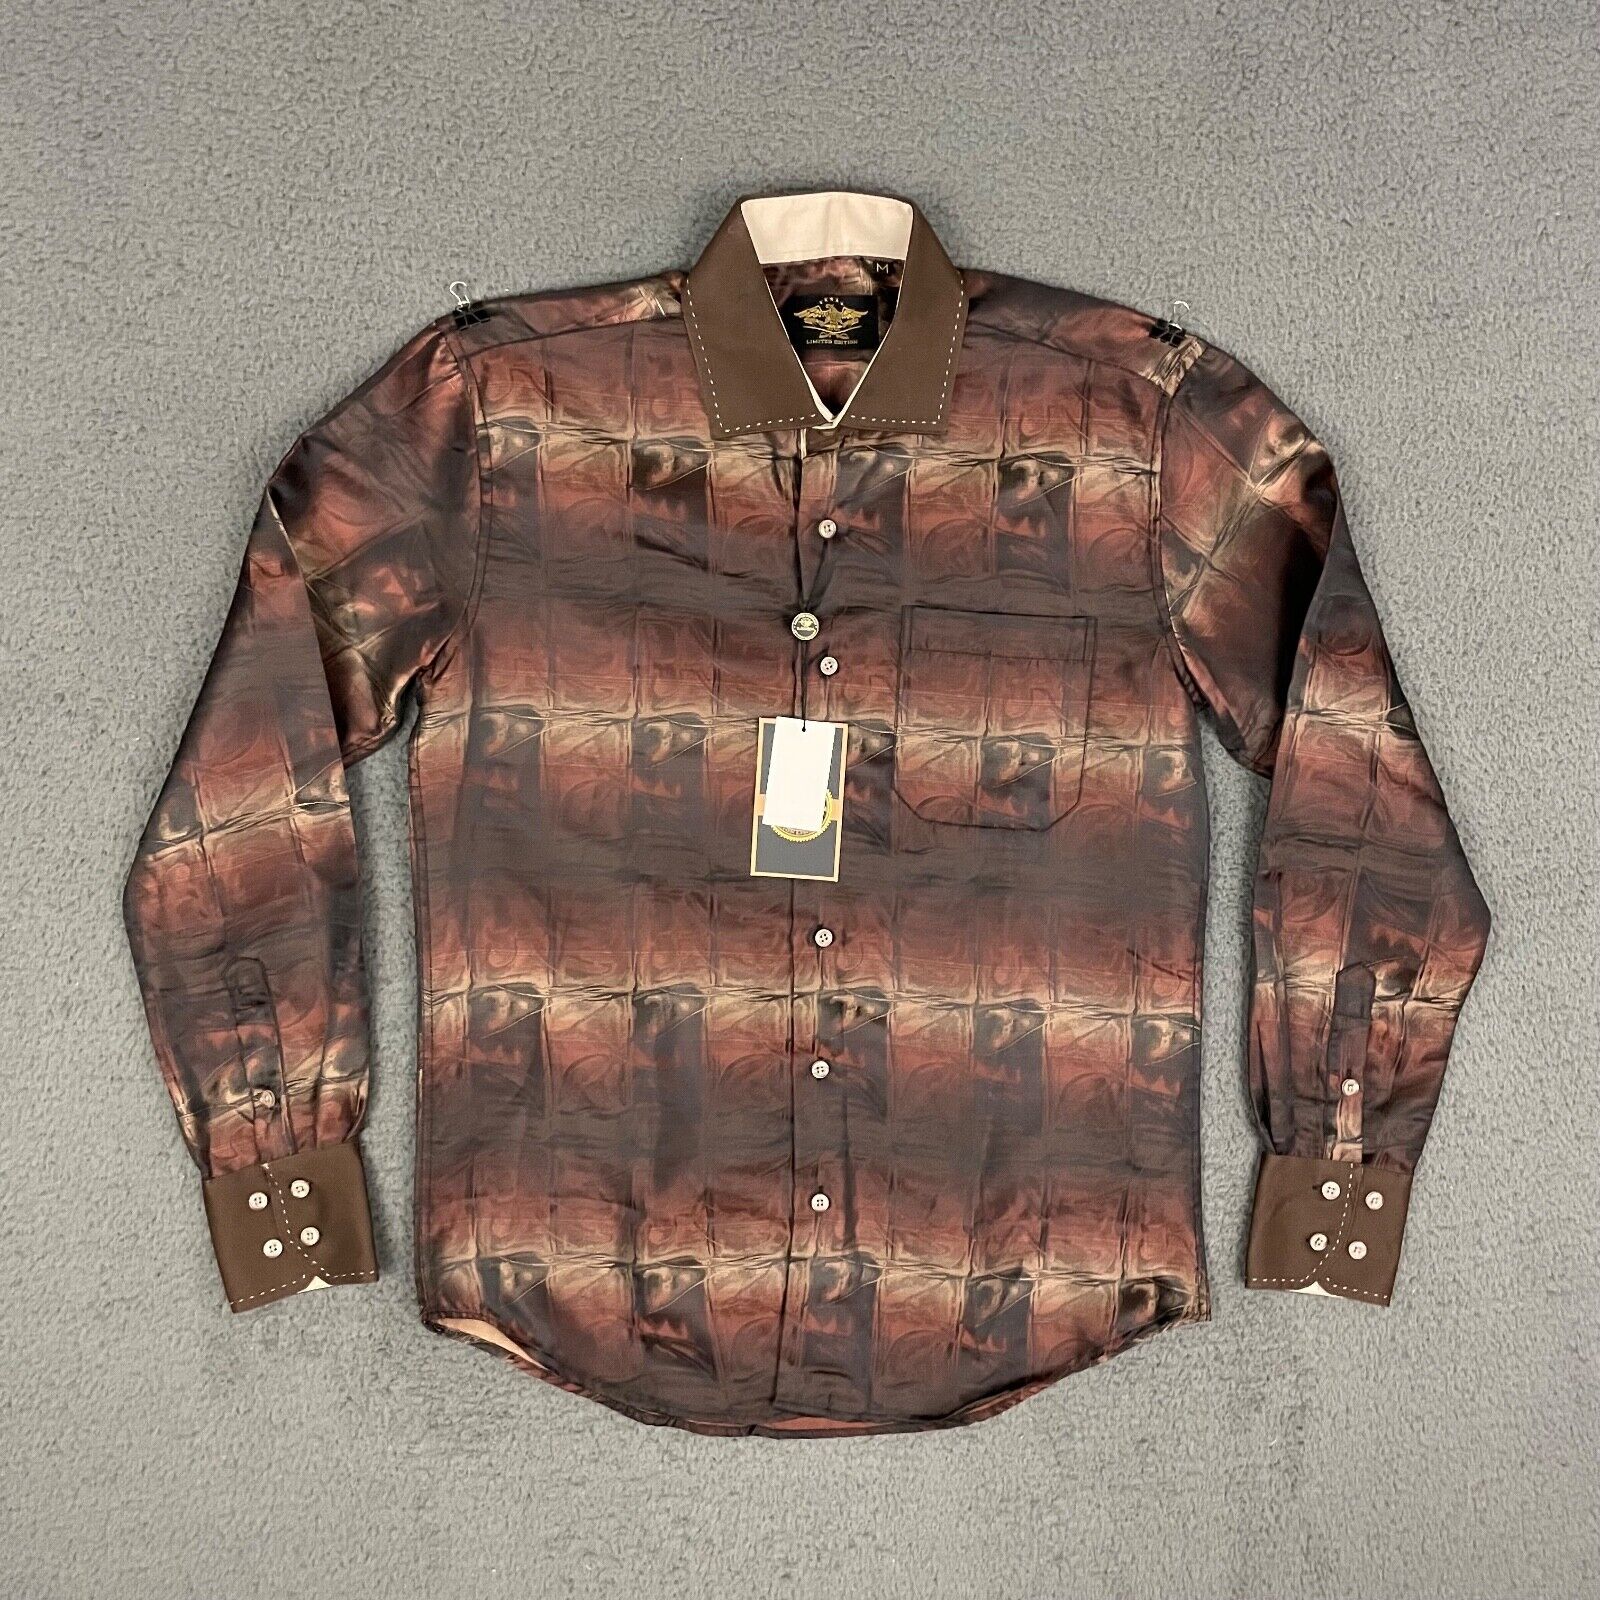 El General Shirt Mens Medium Multicolor Abstract Limited Edition Western Cowboy